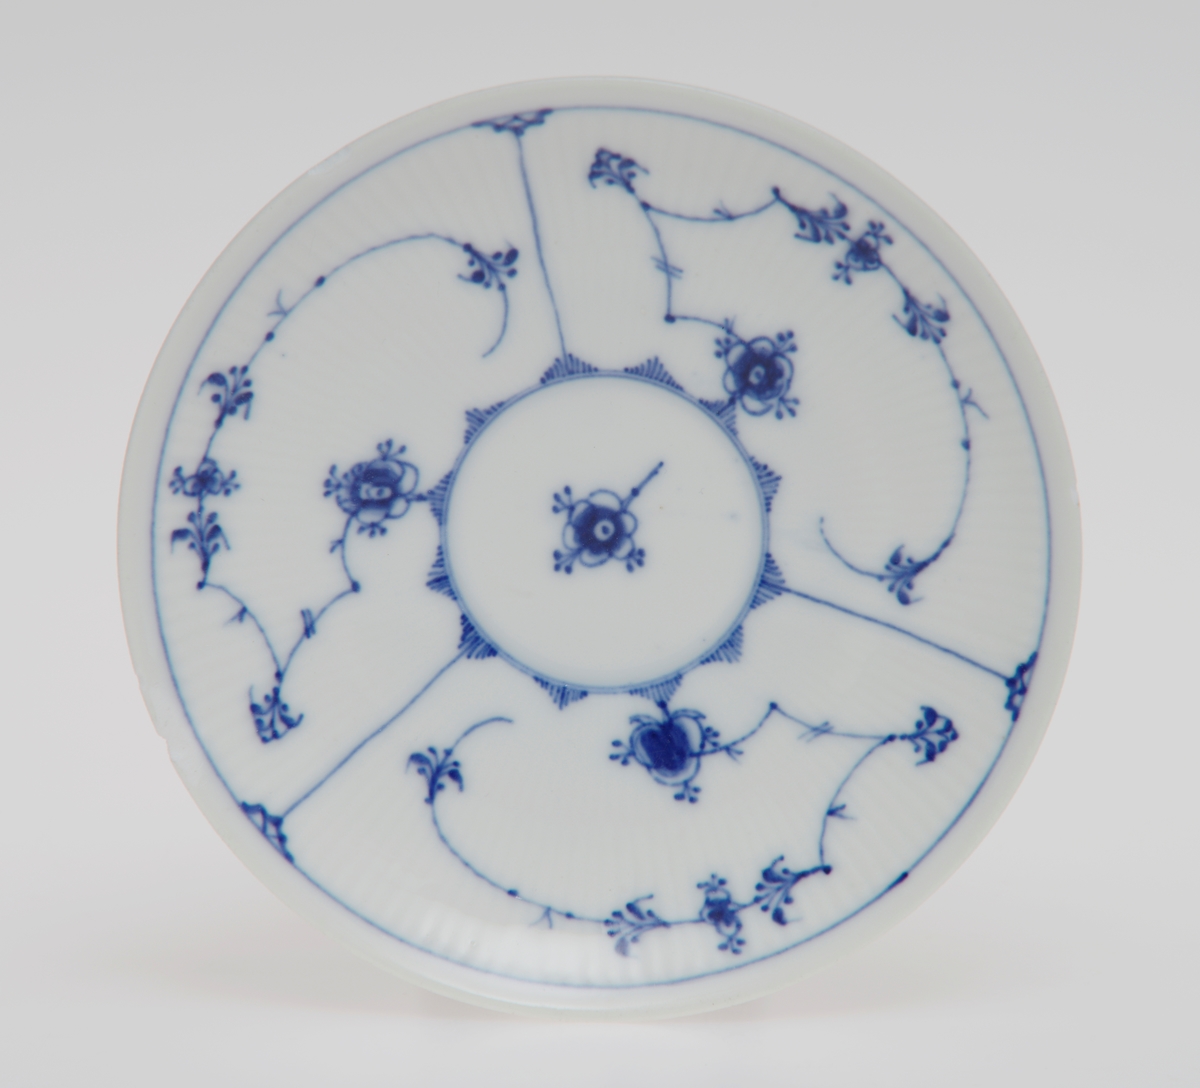 Sirkulært tefat i porselen med glasur. Rifler i porselenet og dekorert med stråmønster i blått.